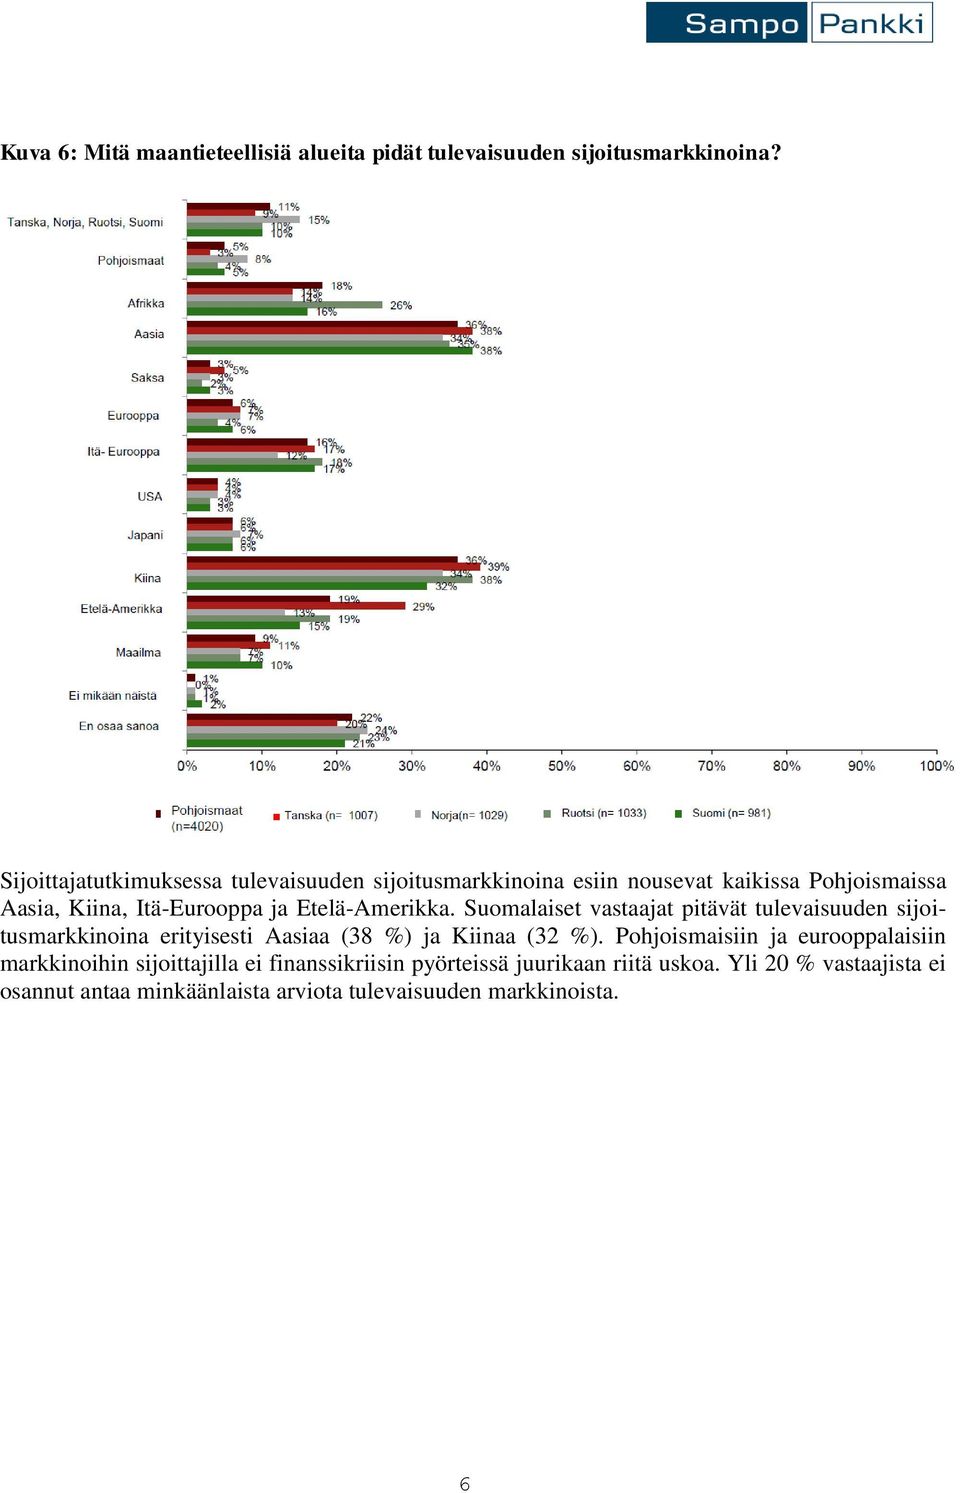 Etelä-Amerikka. Suomalaiset vastaajat pitävät tulevaisuuden sijoitusmarkkinoina erityisesti Aasiaa (38 %) ja Kiinaa (32 %).